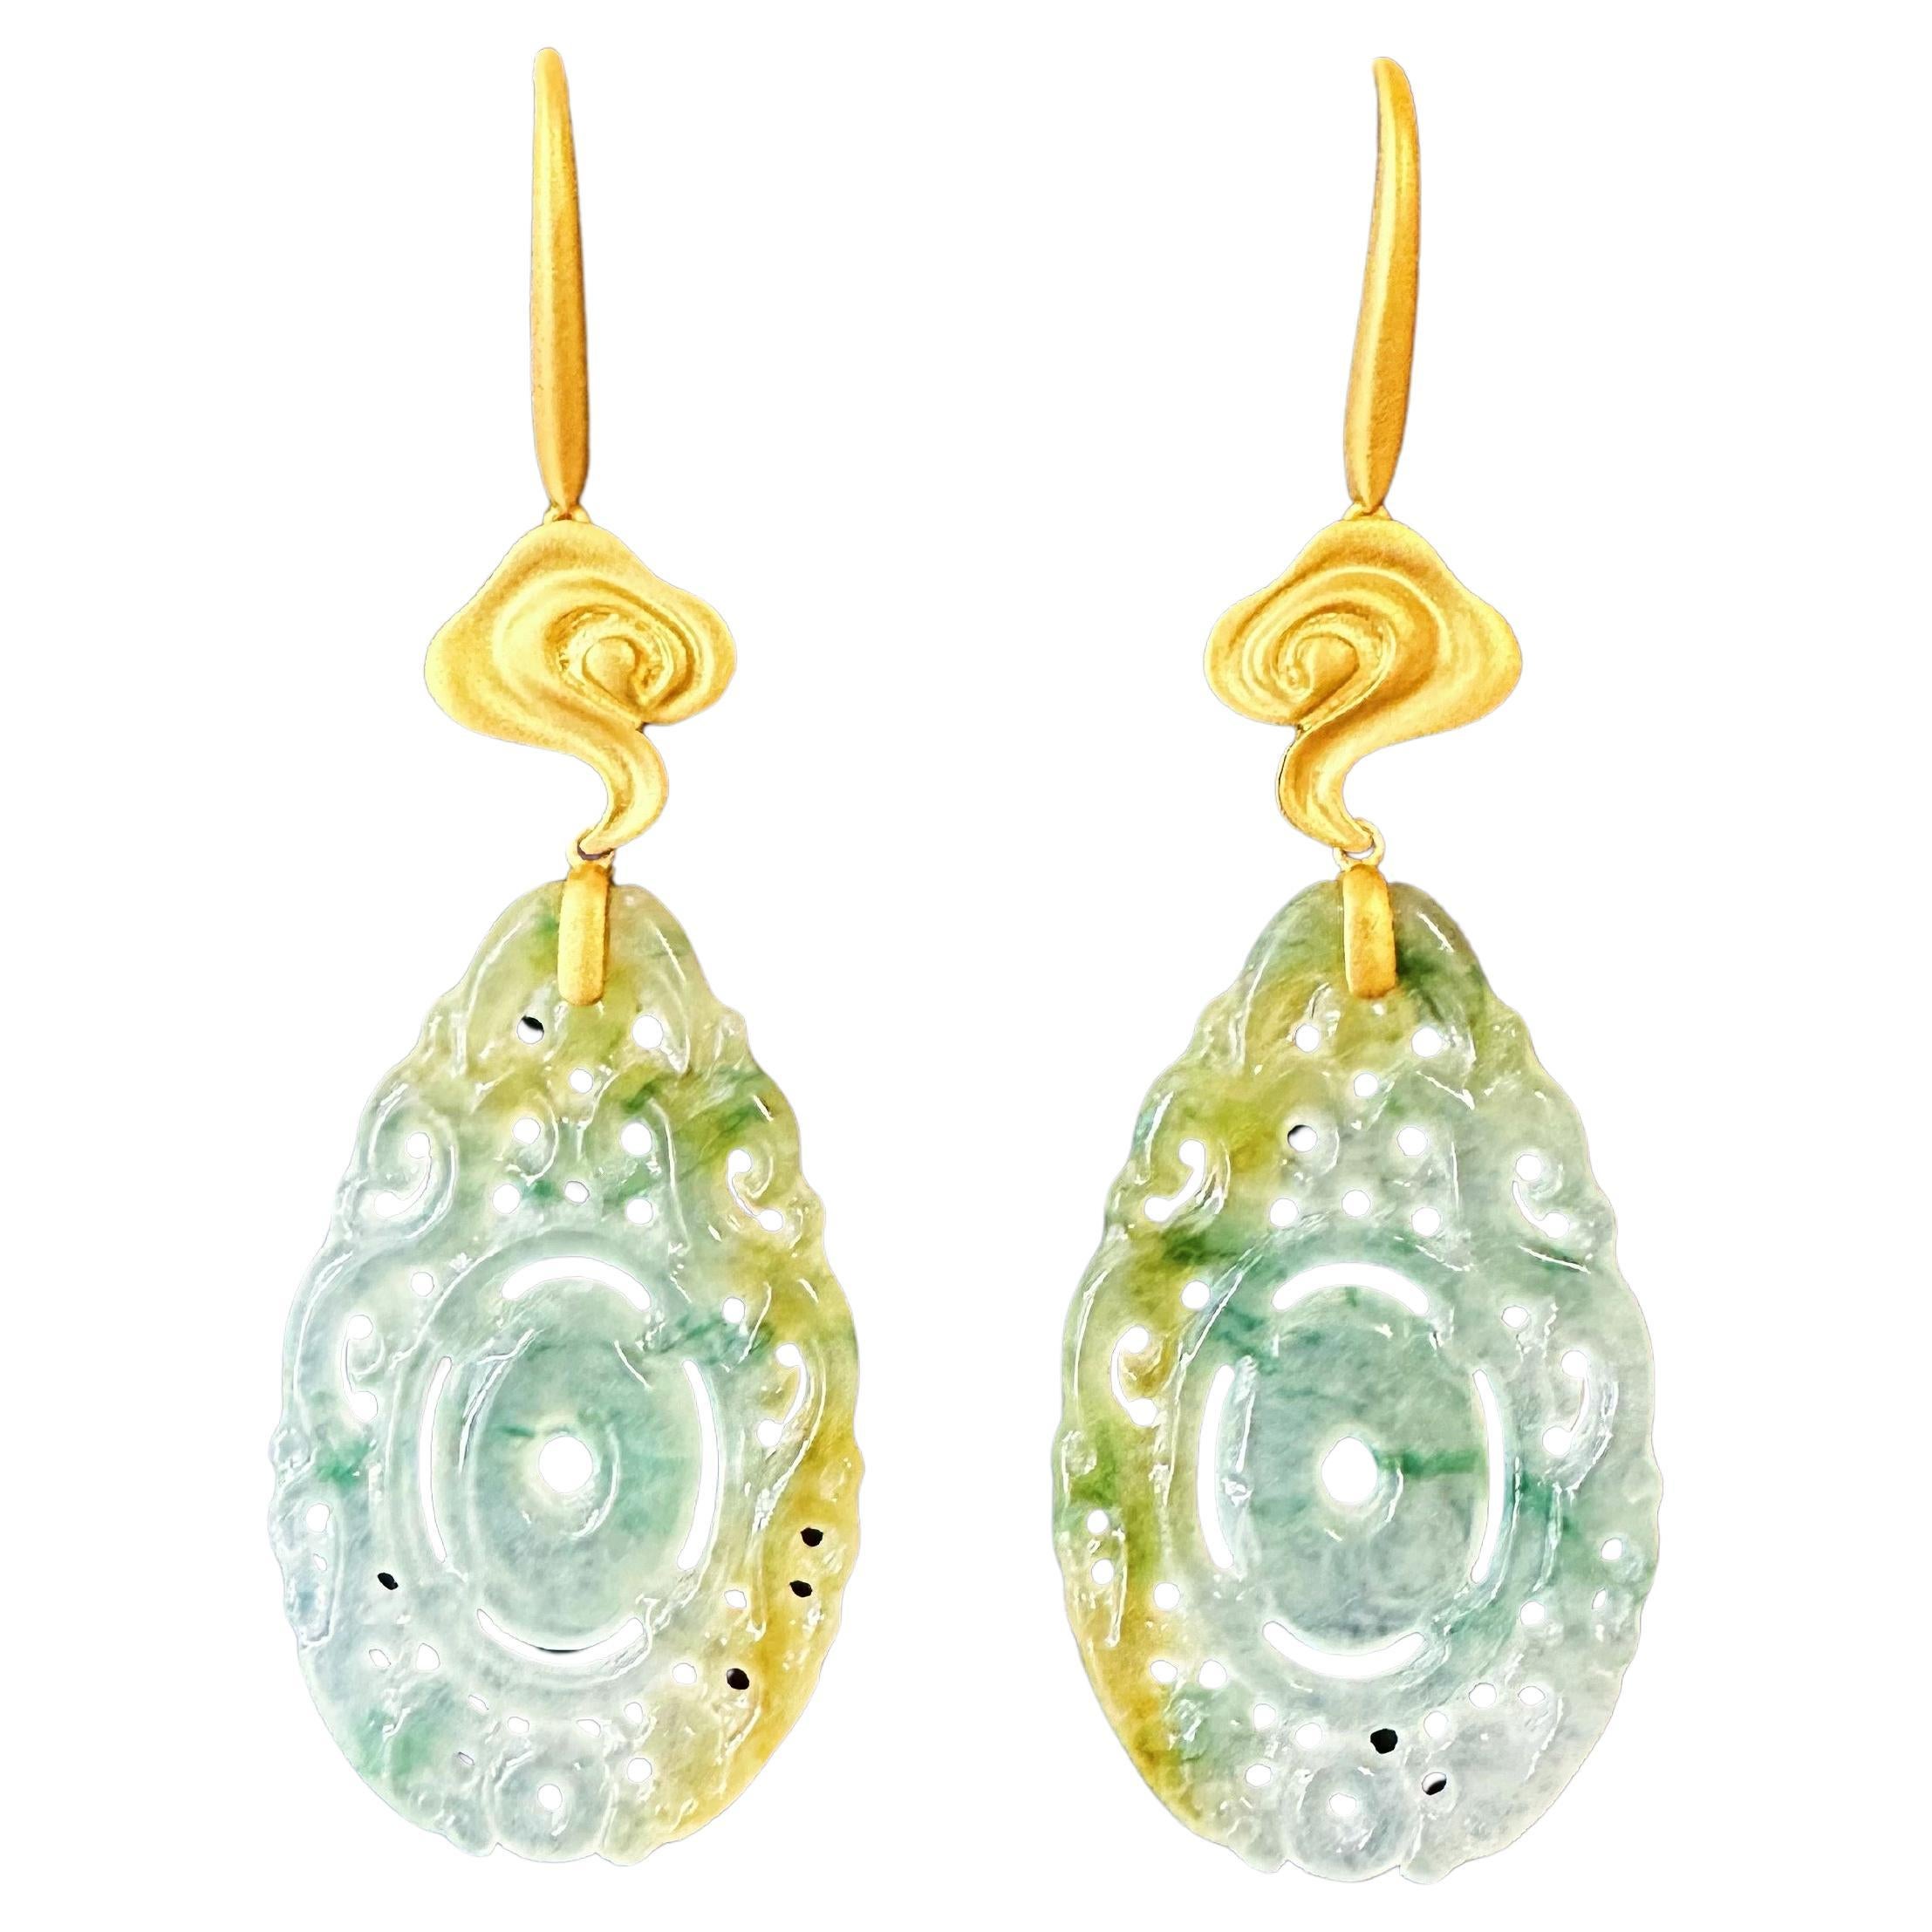 Unsere außergewöhnlichen Ohrringe aus zweifarbiger Jade sind der Inbegriff von raffinierter Eleganz und zeitloser Raffinesse. Diese exquisiten, handgefertigten Ohrringe bestehen aus sorgfältig ausgewählten eisartigen Jadestücken, die perfekt geformt